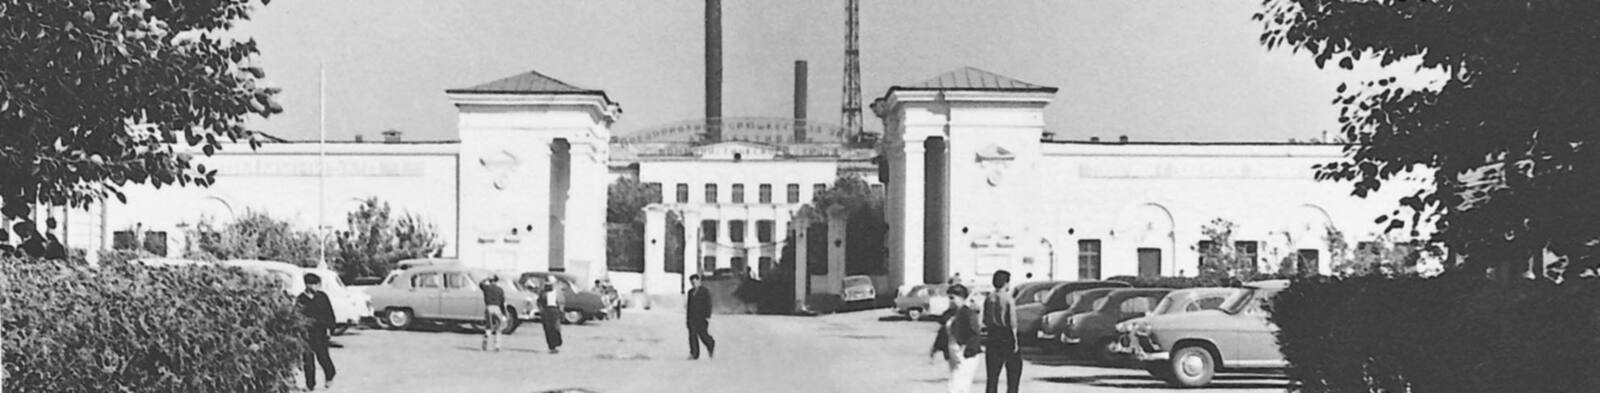 Новосибирский завод химконцентратов